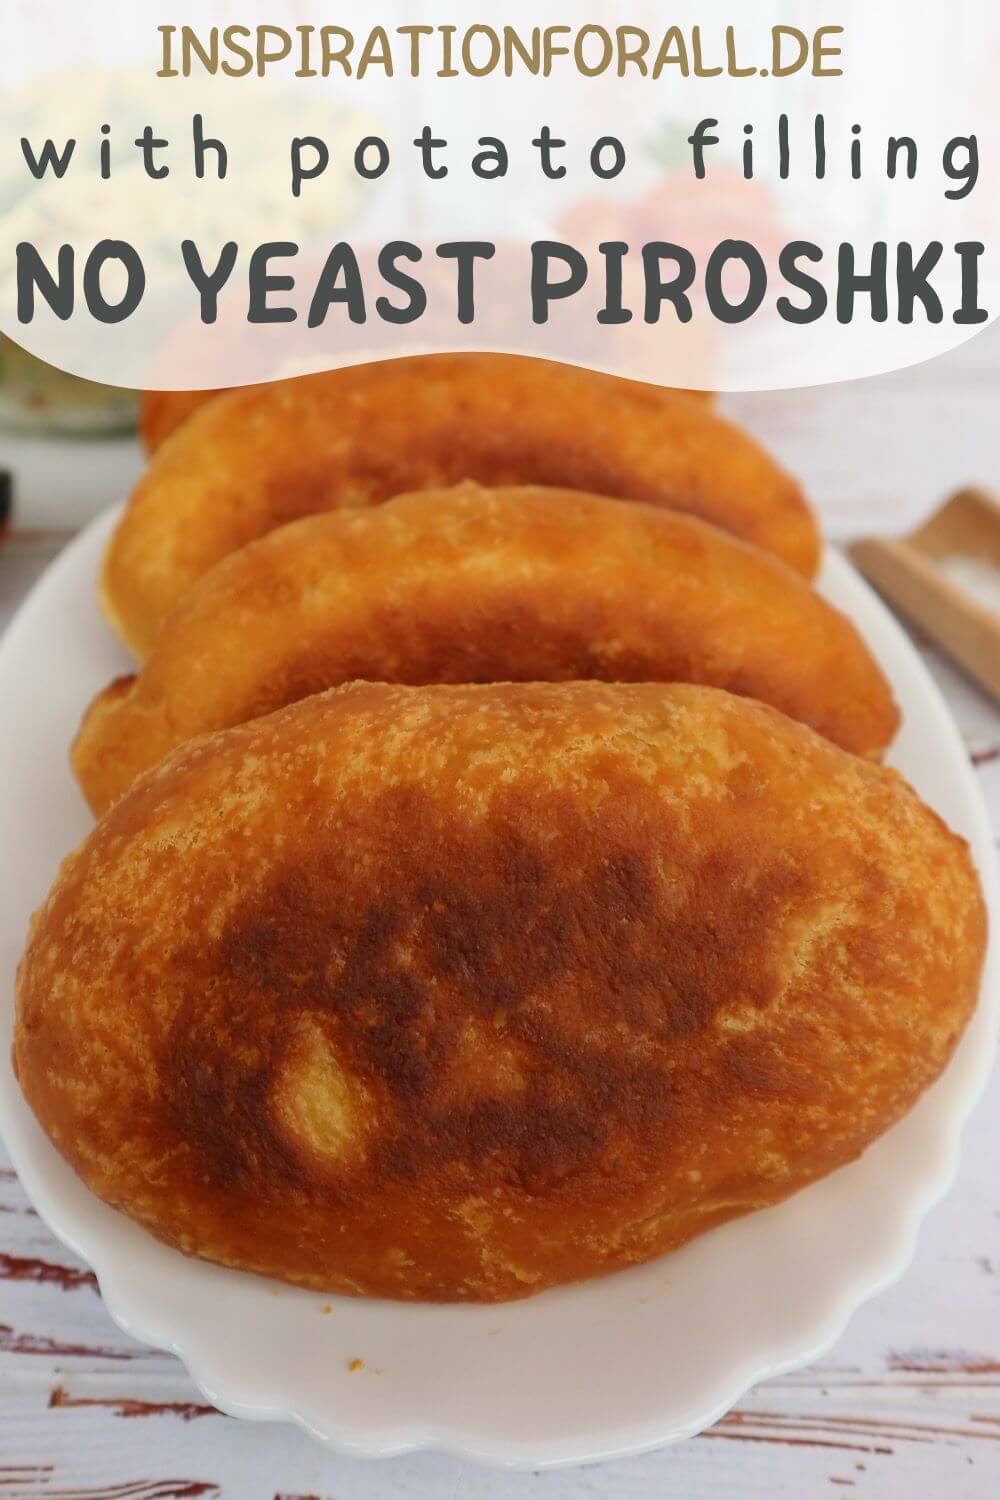 Pin No yeast piroshki